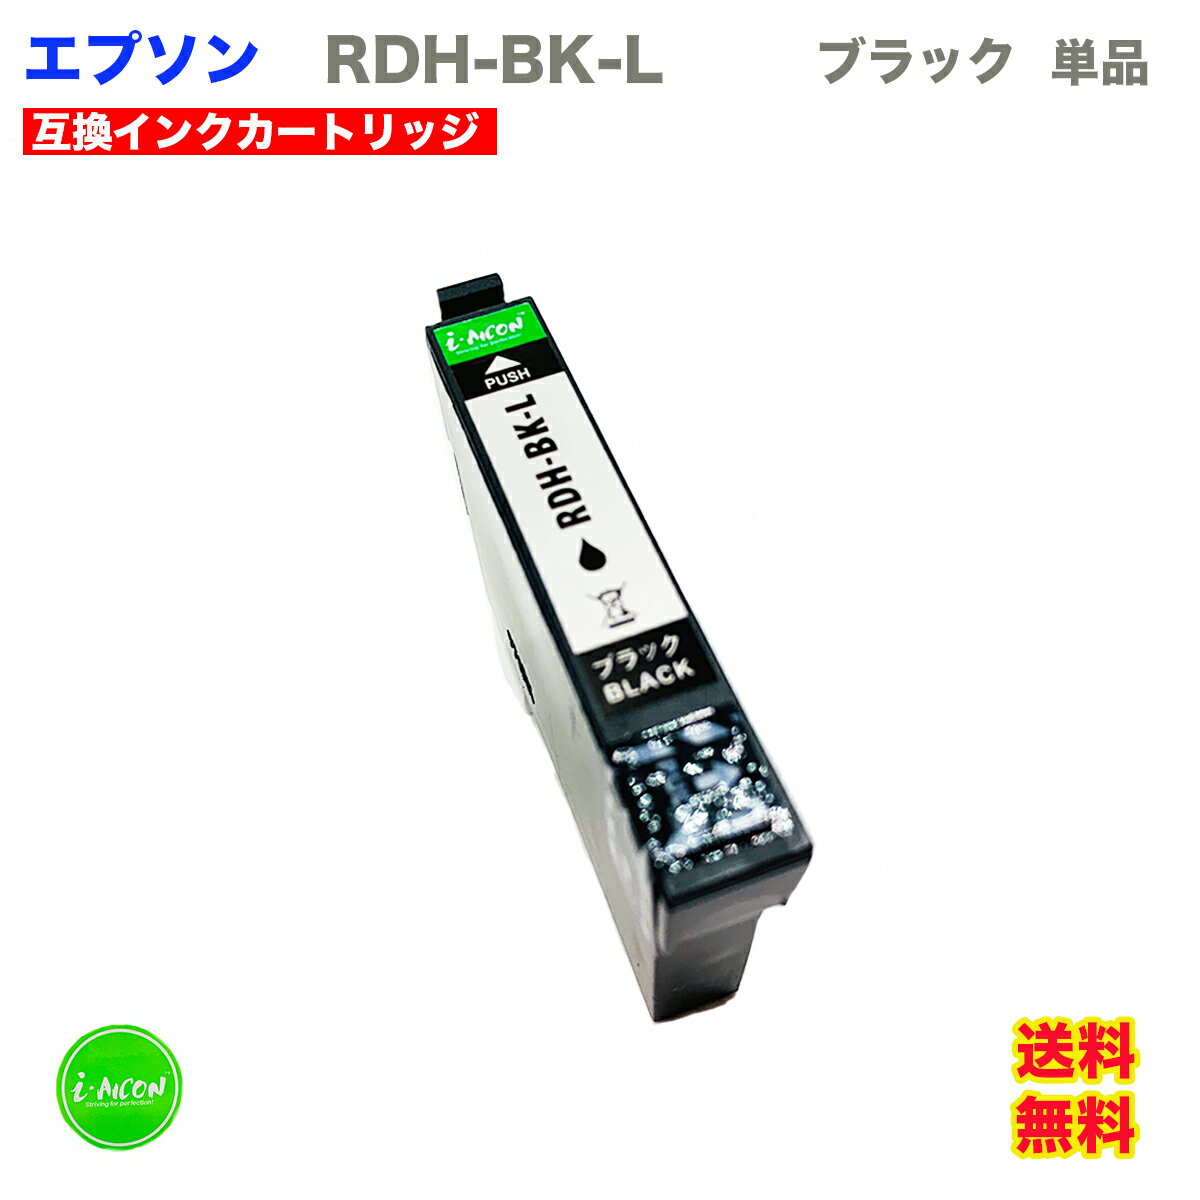 RDH 互換インクカートリッジ BK ブラック 互換インクカートリッジ 大容量 大きい XL 単品 キヤノン 互換インク 互換 インク インクカートリッジ RDH-BK RDHBK RDH-BK-L i-con